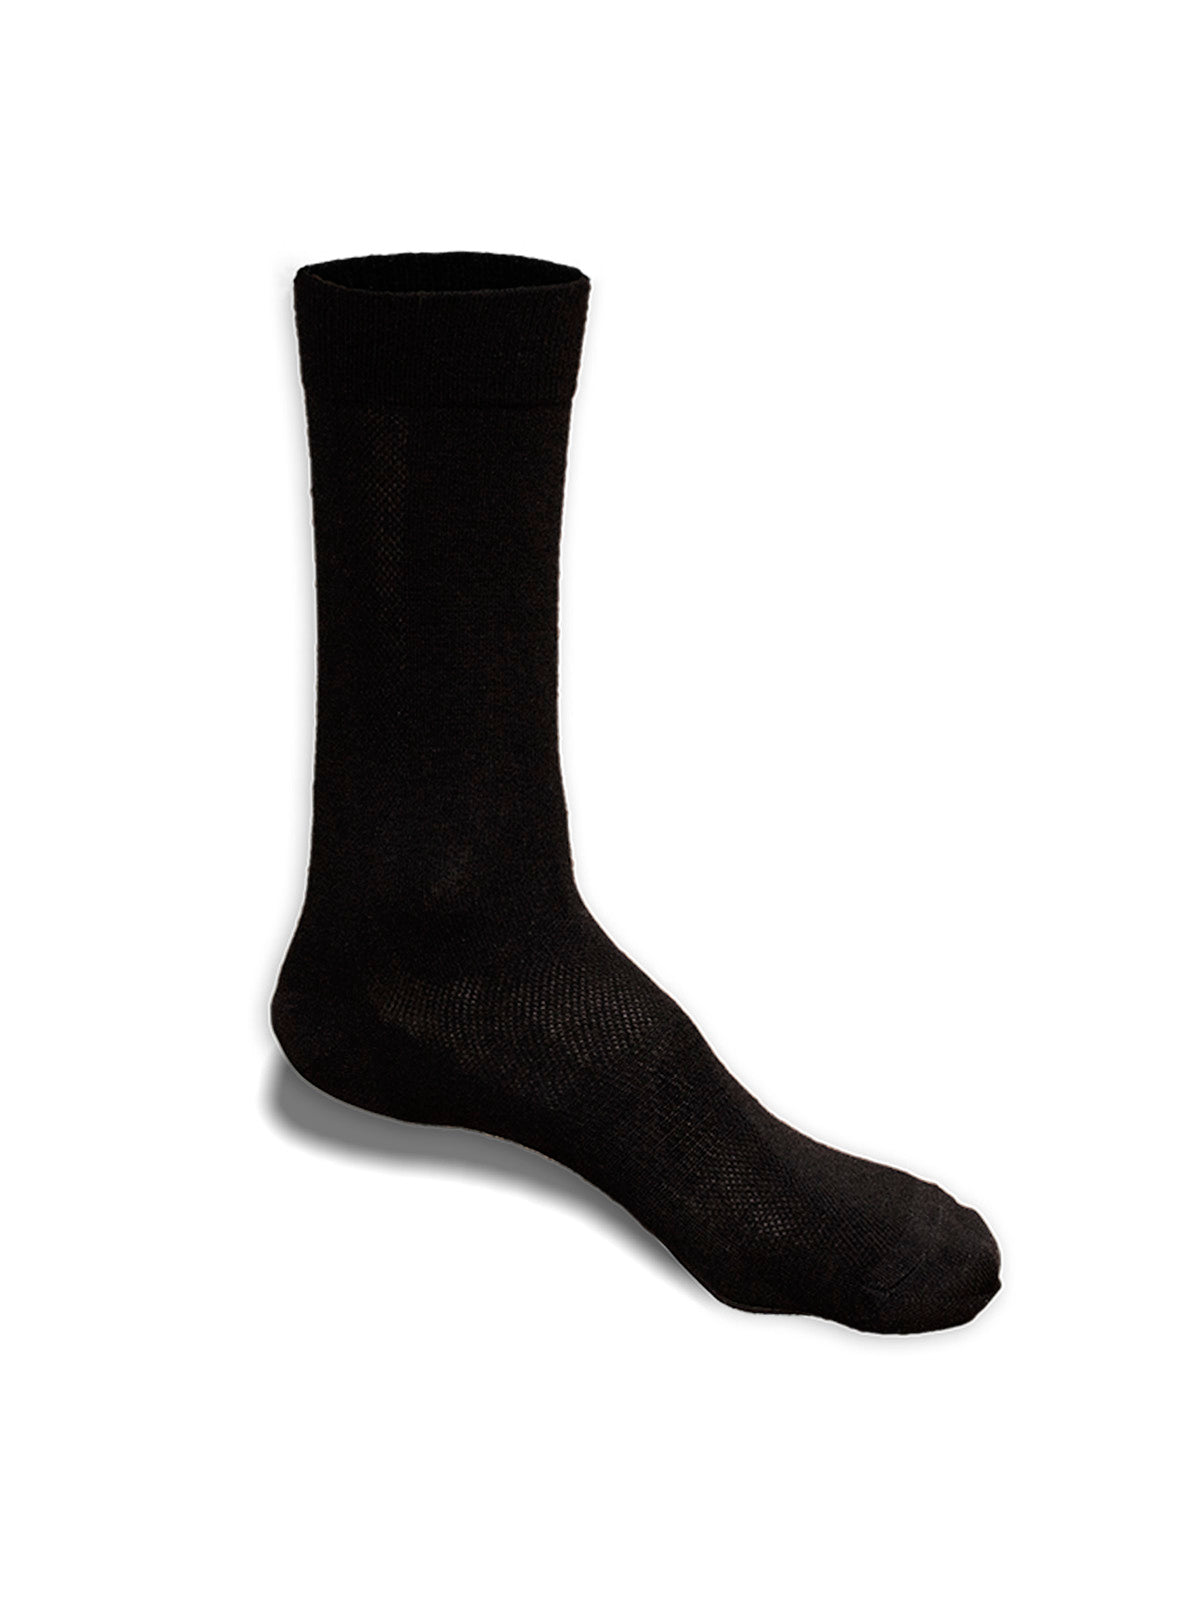 mens merino socks reinforced